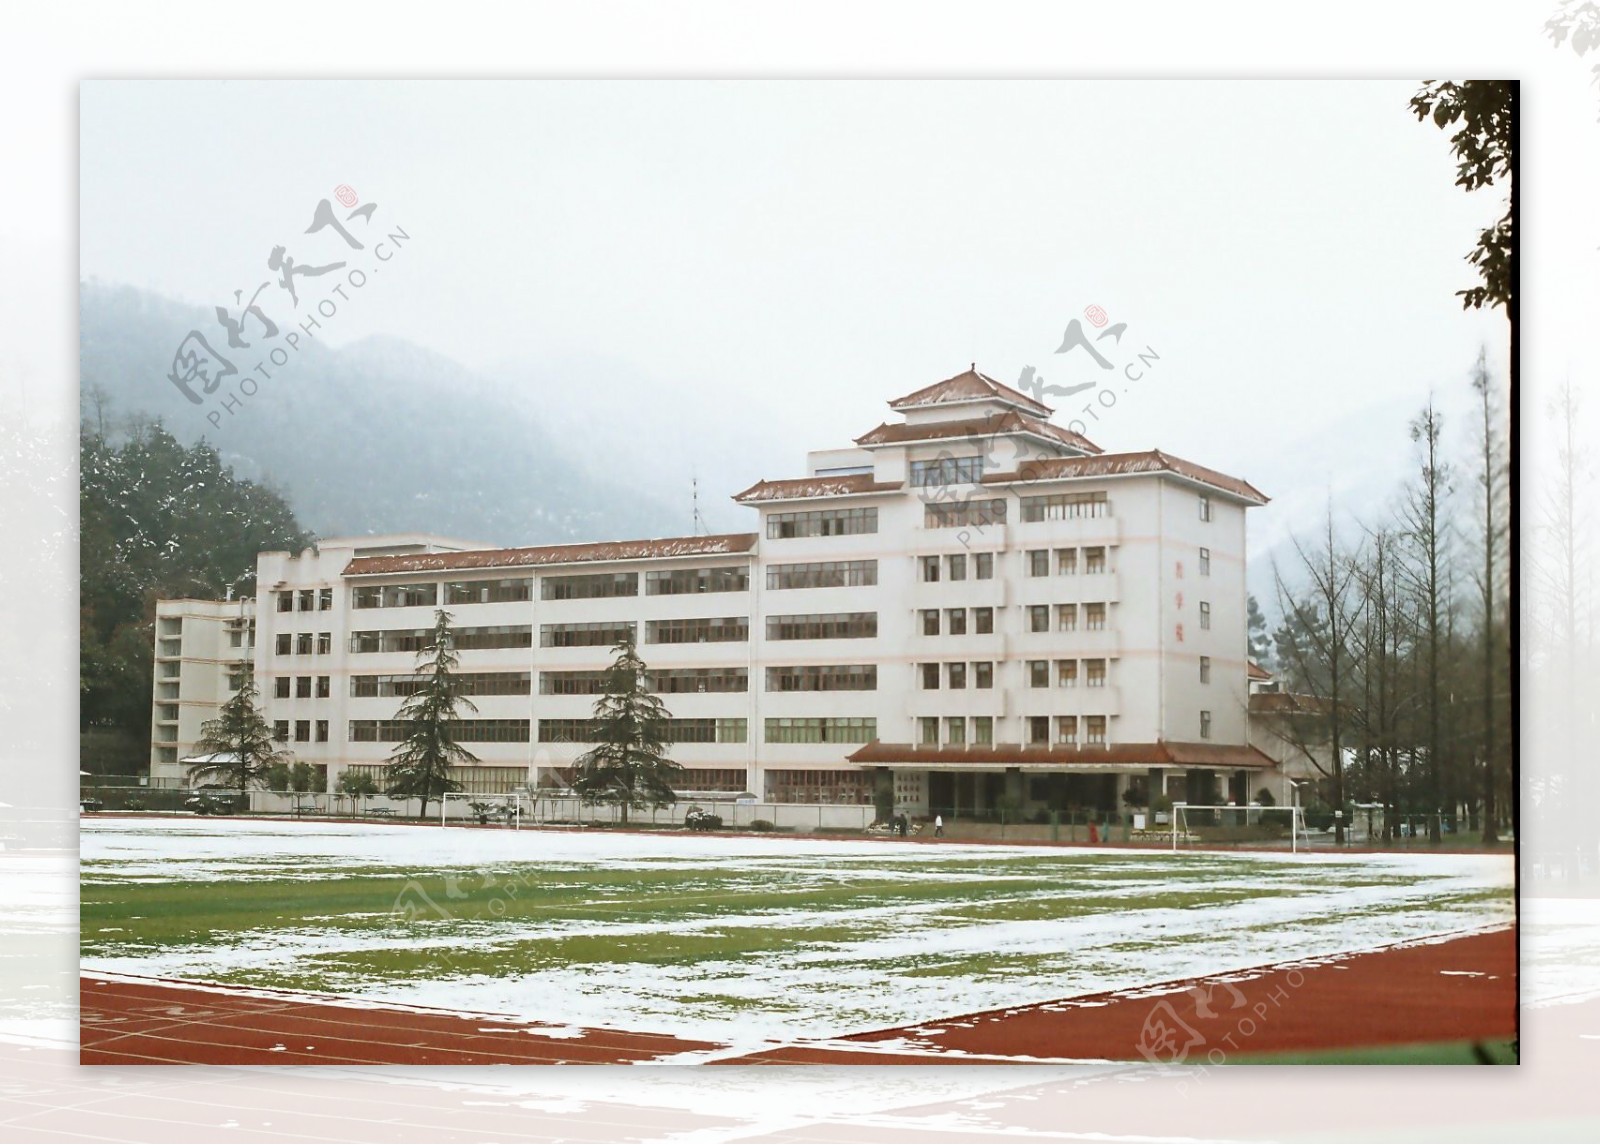 四川农业大学教学楼雪景图片